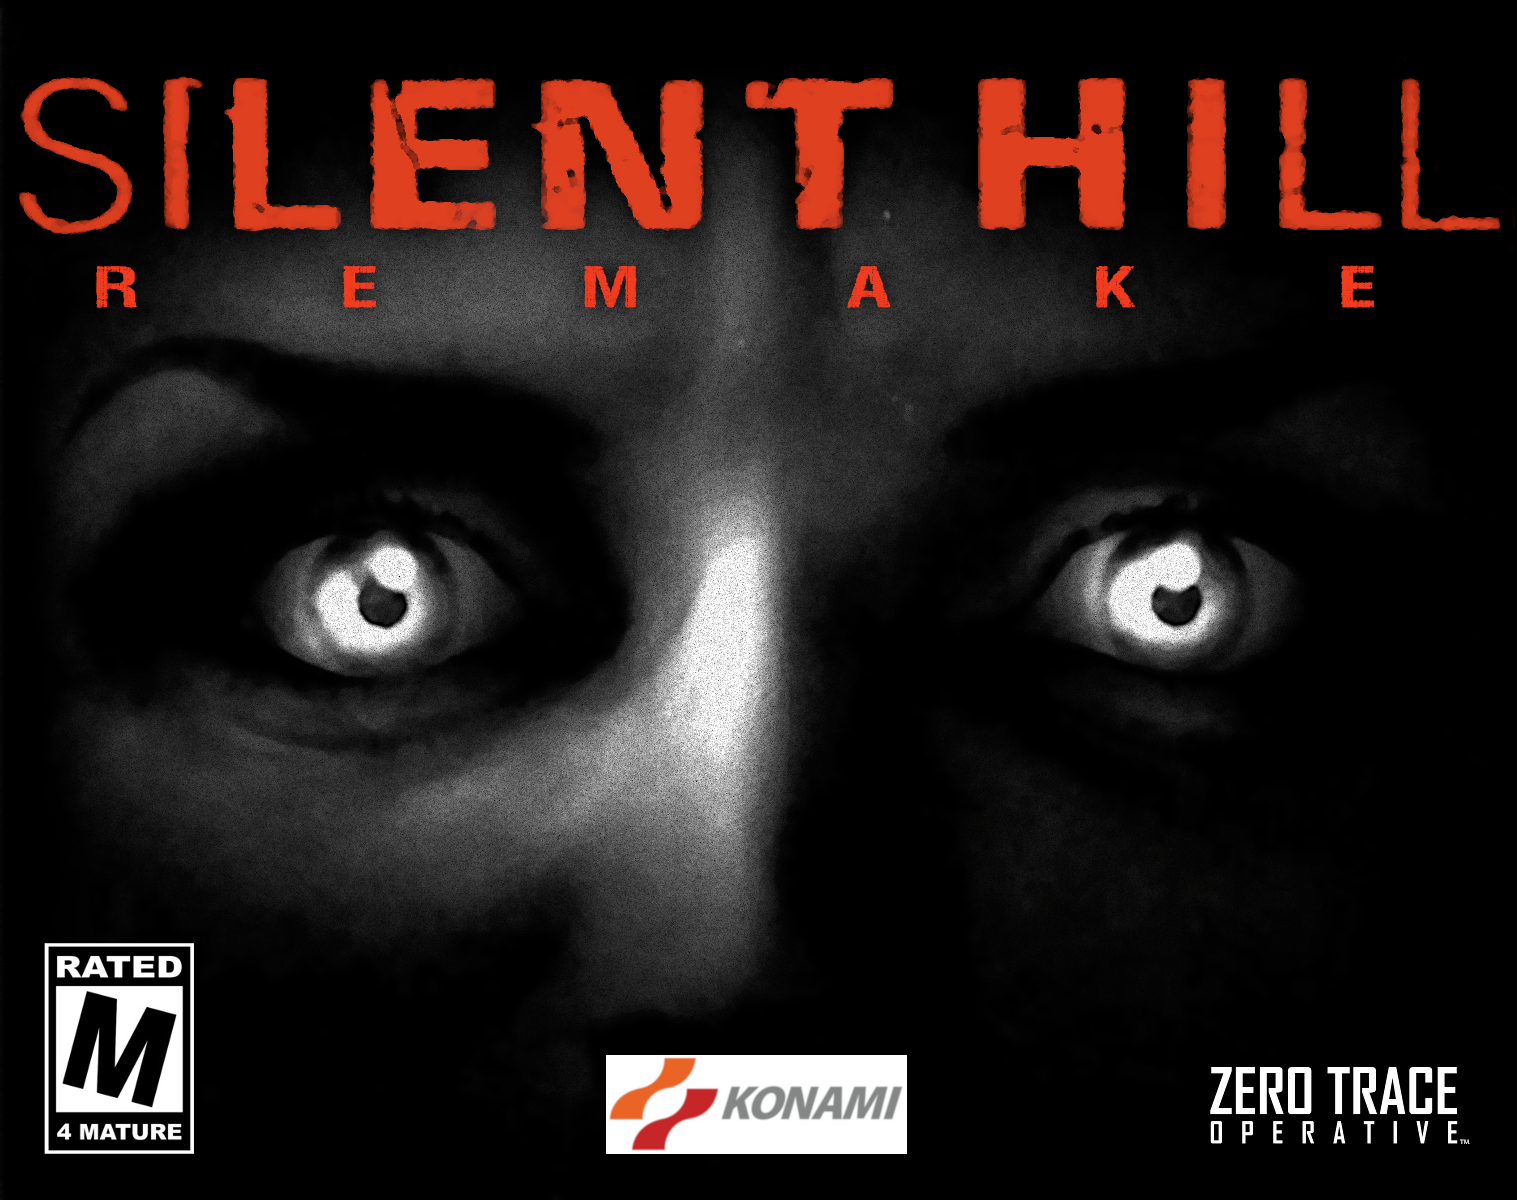 silent hill 1 pc download reddit